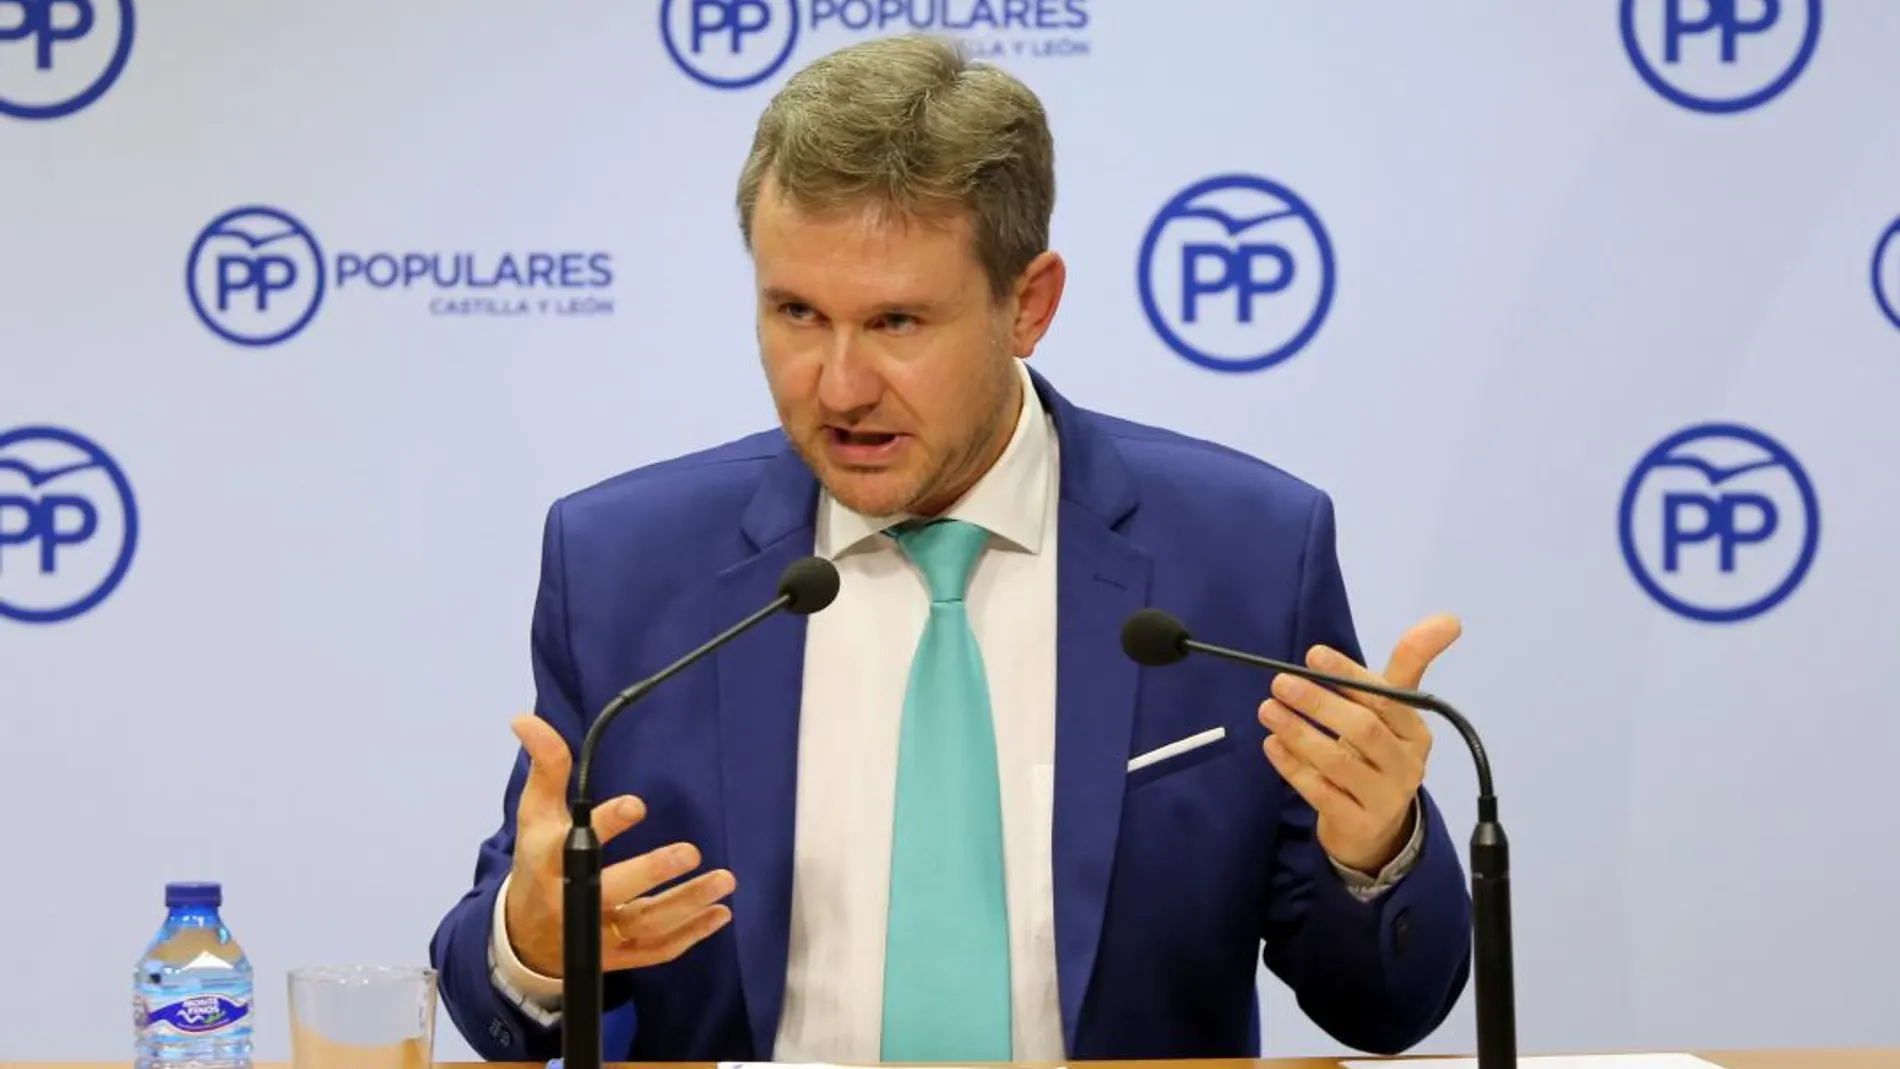 El vicesecretario del Partido Popular en Castilla y León, Javier Lacalle, informa sobre las medidas tomadas de cara a la convención nacional y futuras elecciones autonómicas